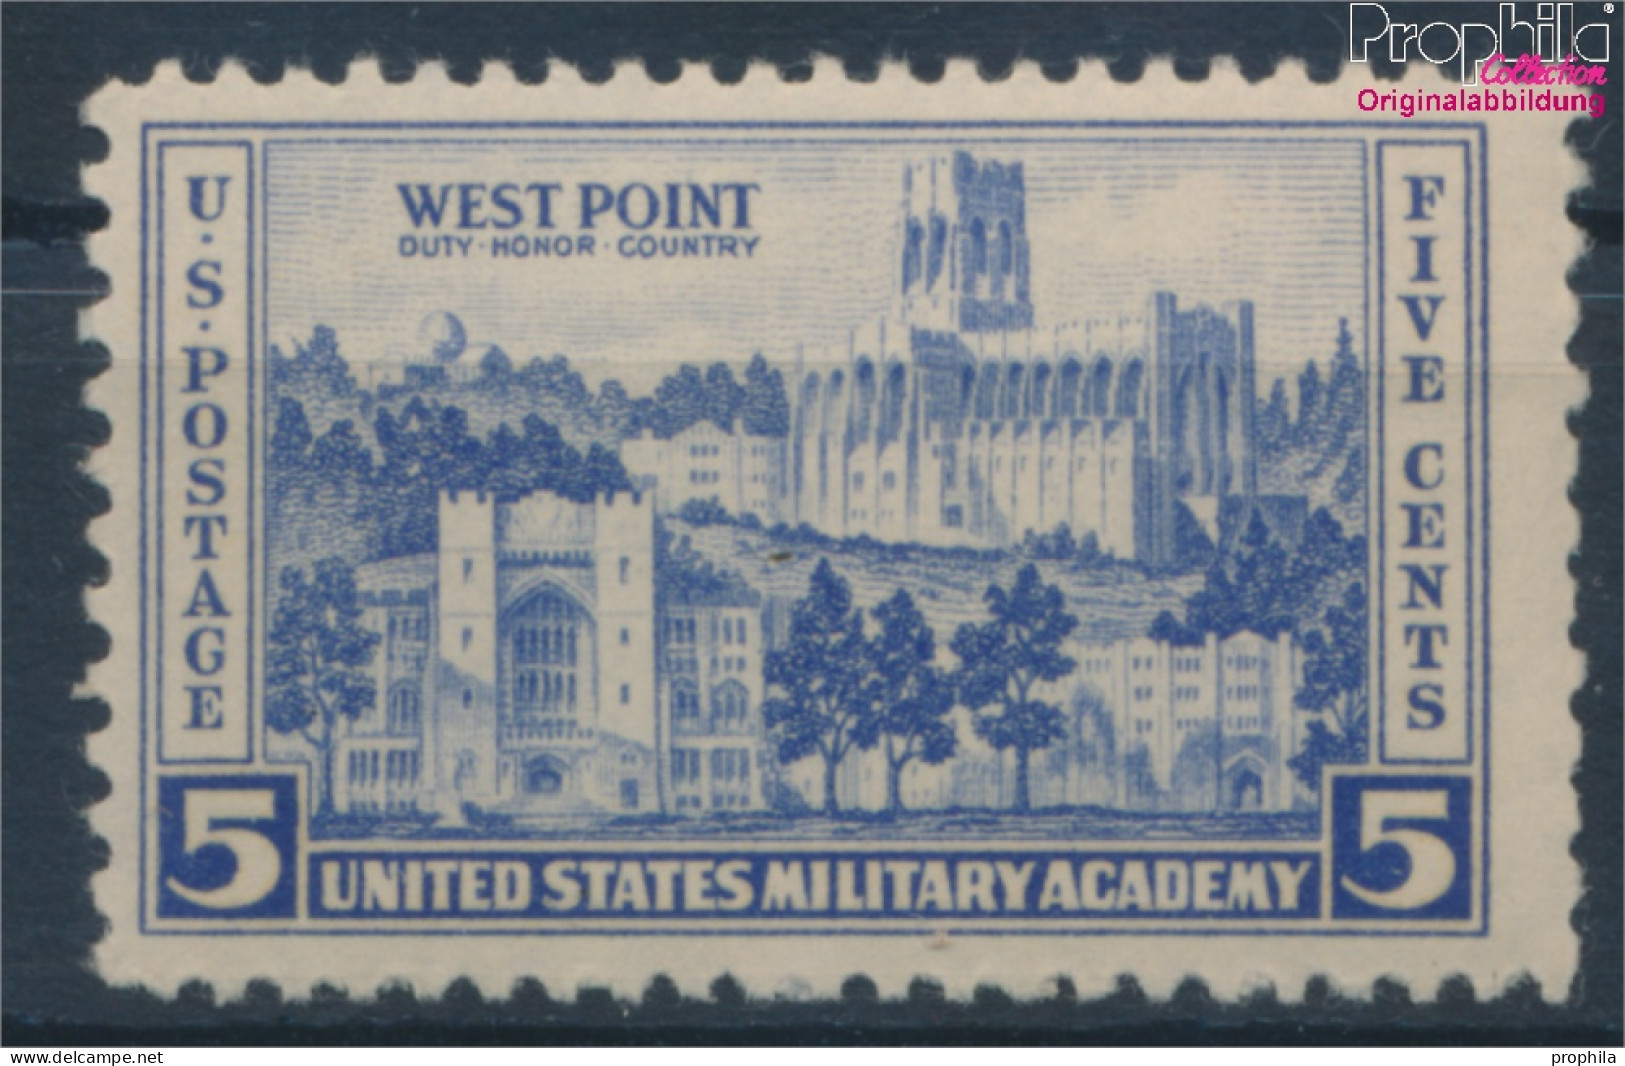 USA 394 Postfrisch 1936 Land- Und Seestreitkräfte (10336697 - Nuovi